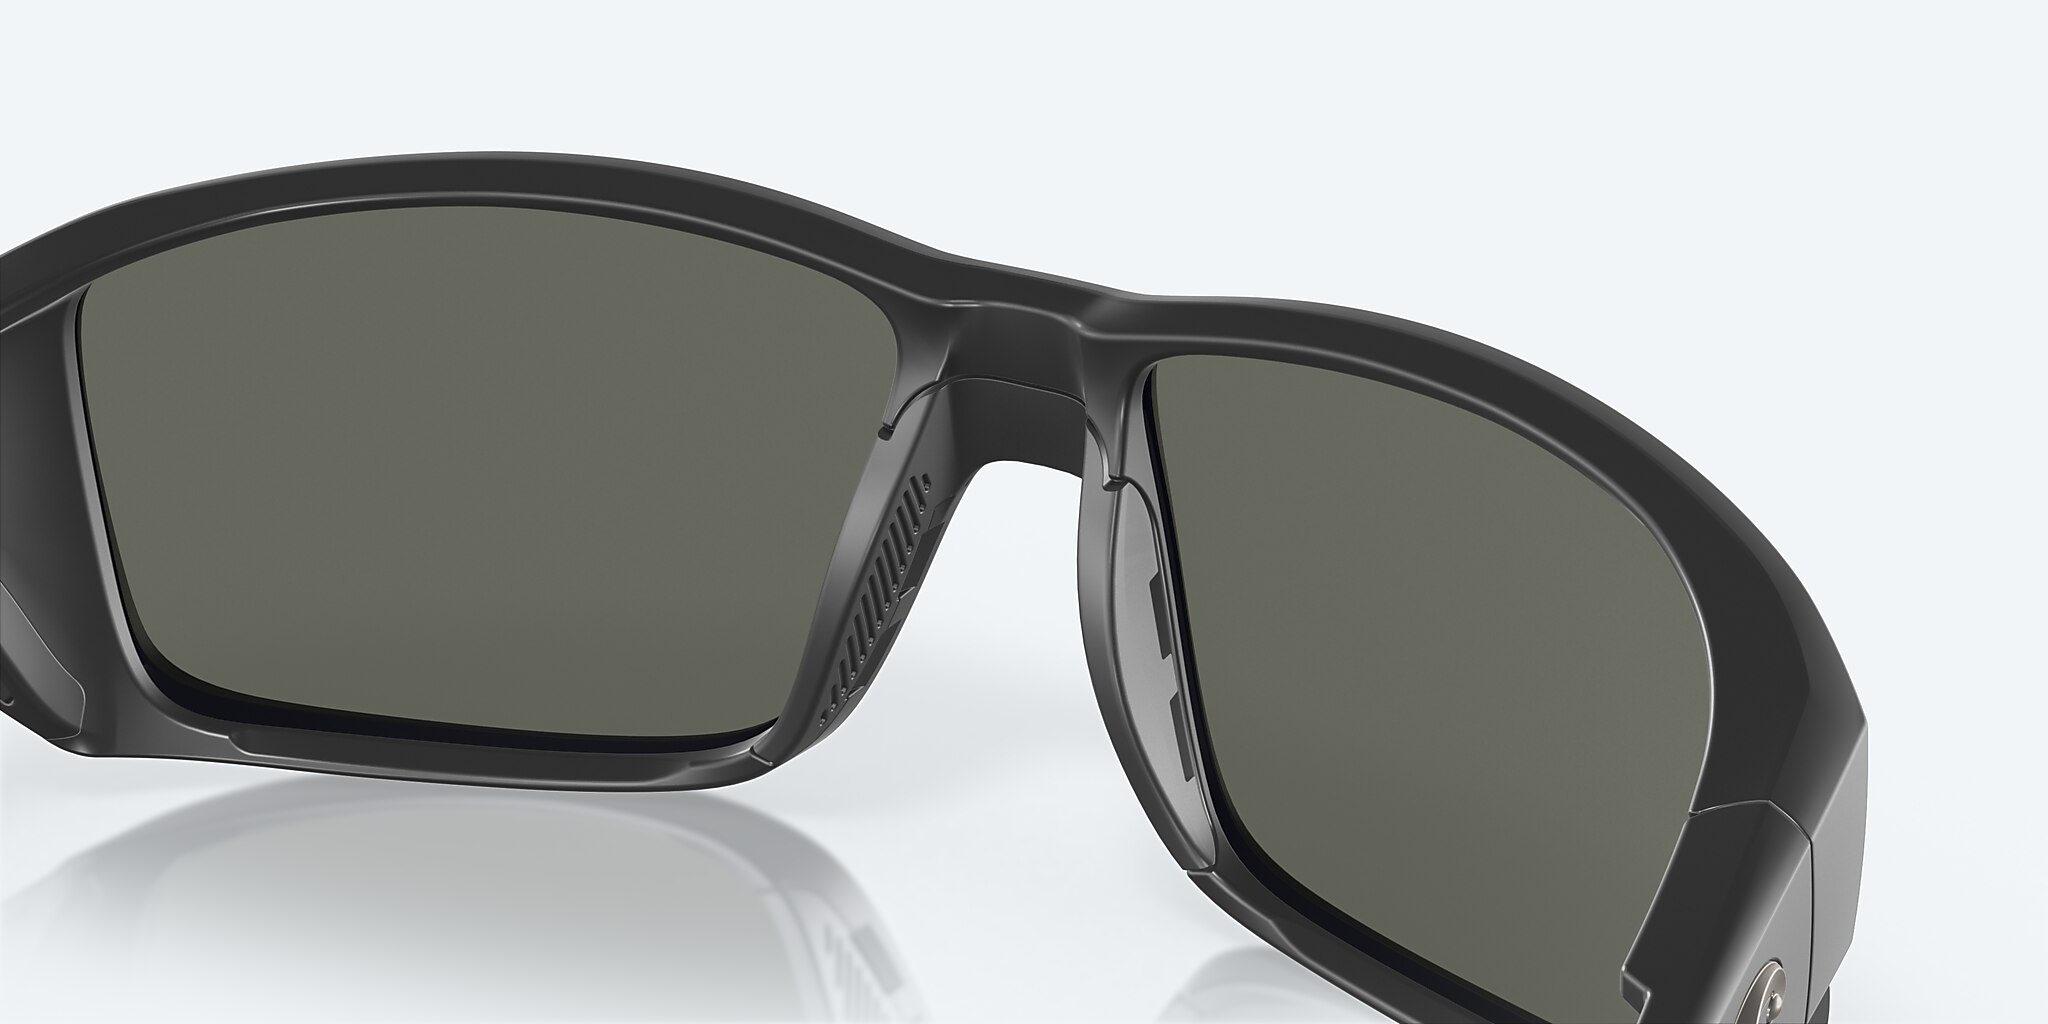 Costa Del Mar Sunglasses Tuna Alley Pro 60-16-123 Black /Gray Silver Mirror 580G